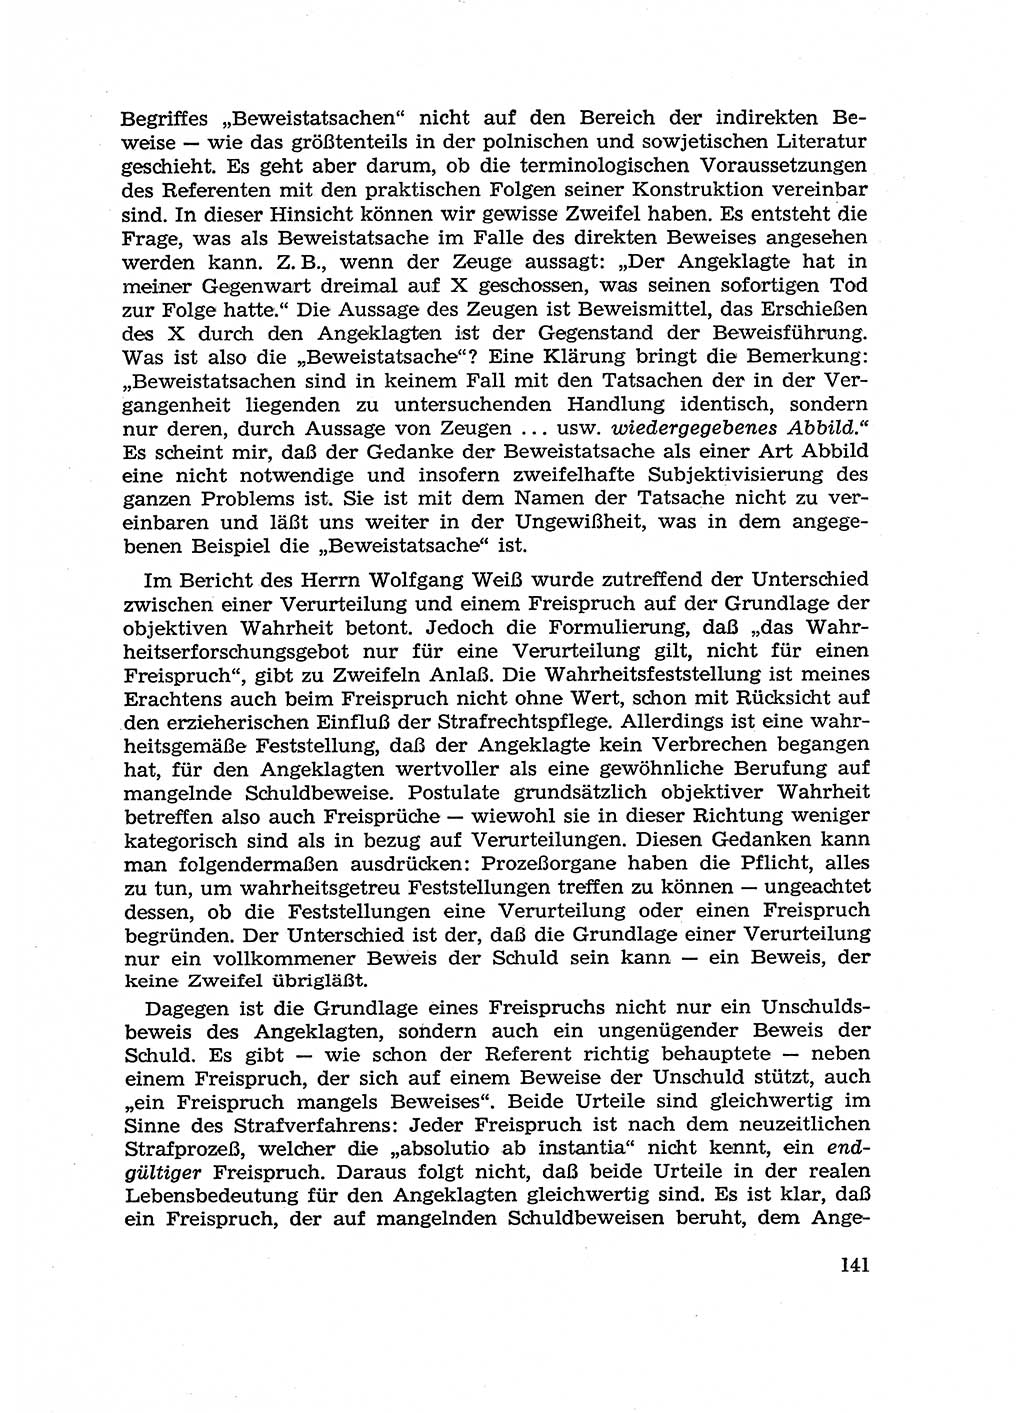 Fragen des Beweisrechts im Strafprozess [Deutsche Demokratische Republik (DDR)] 1956, Seite 141 (Fr. BeweisR. Str.-Proz. DDR 1956, S. 141)